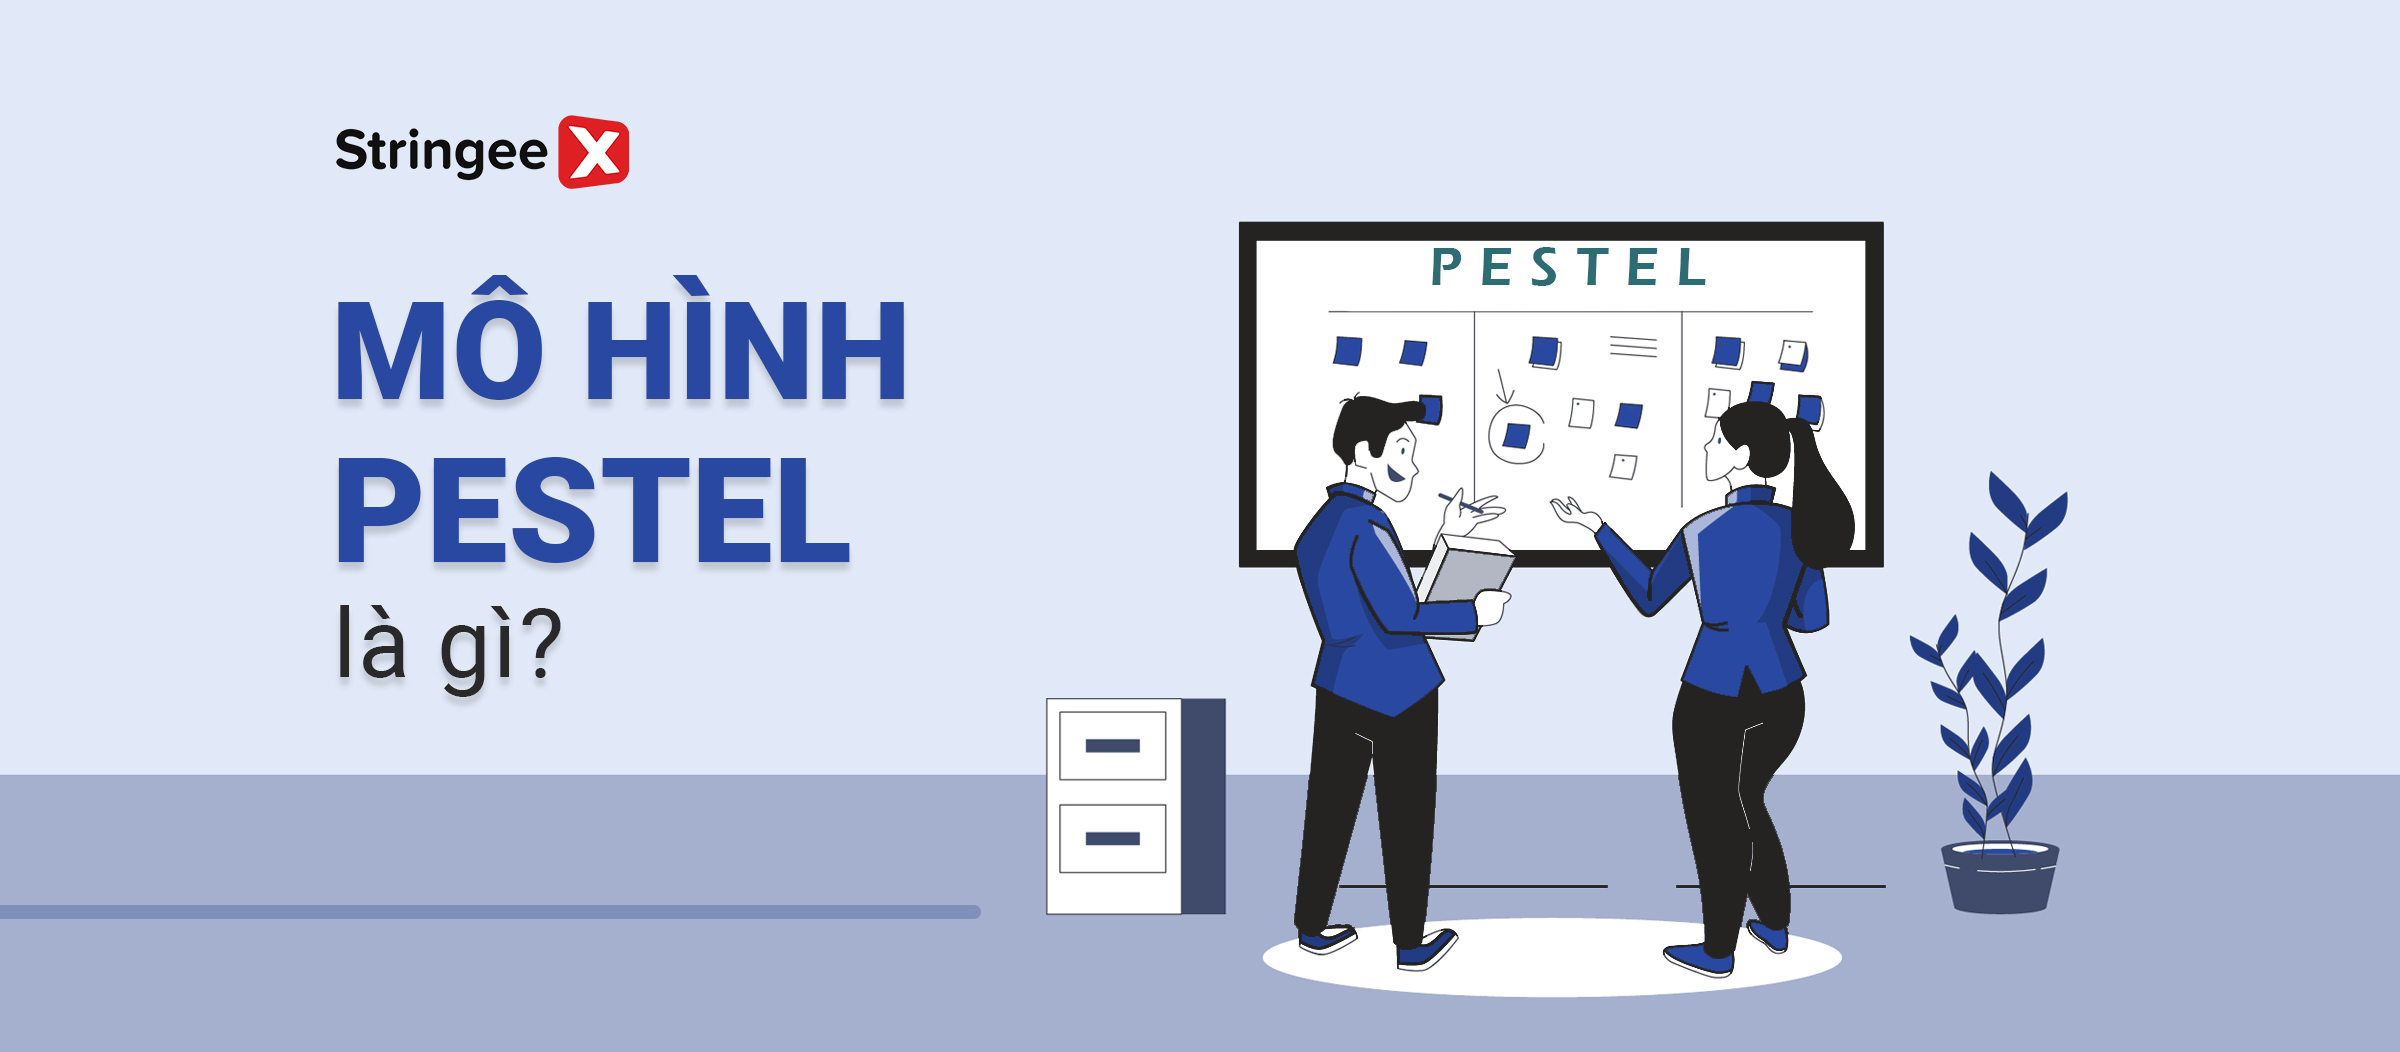 Mô hình PESTEL là gì? Ứng dụng của mô hình PESTEL trong doanh nghiệp